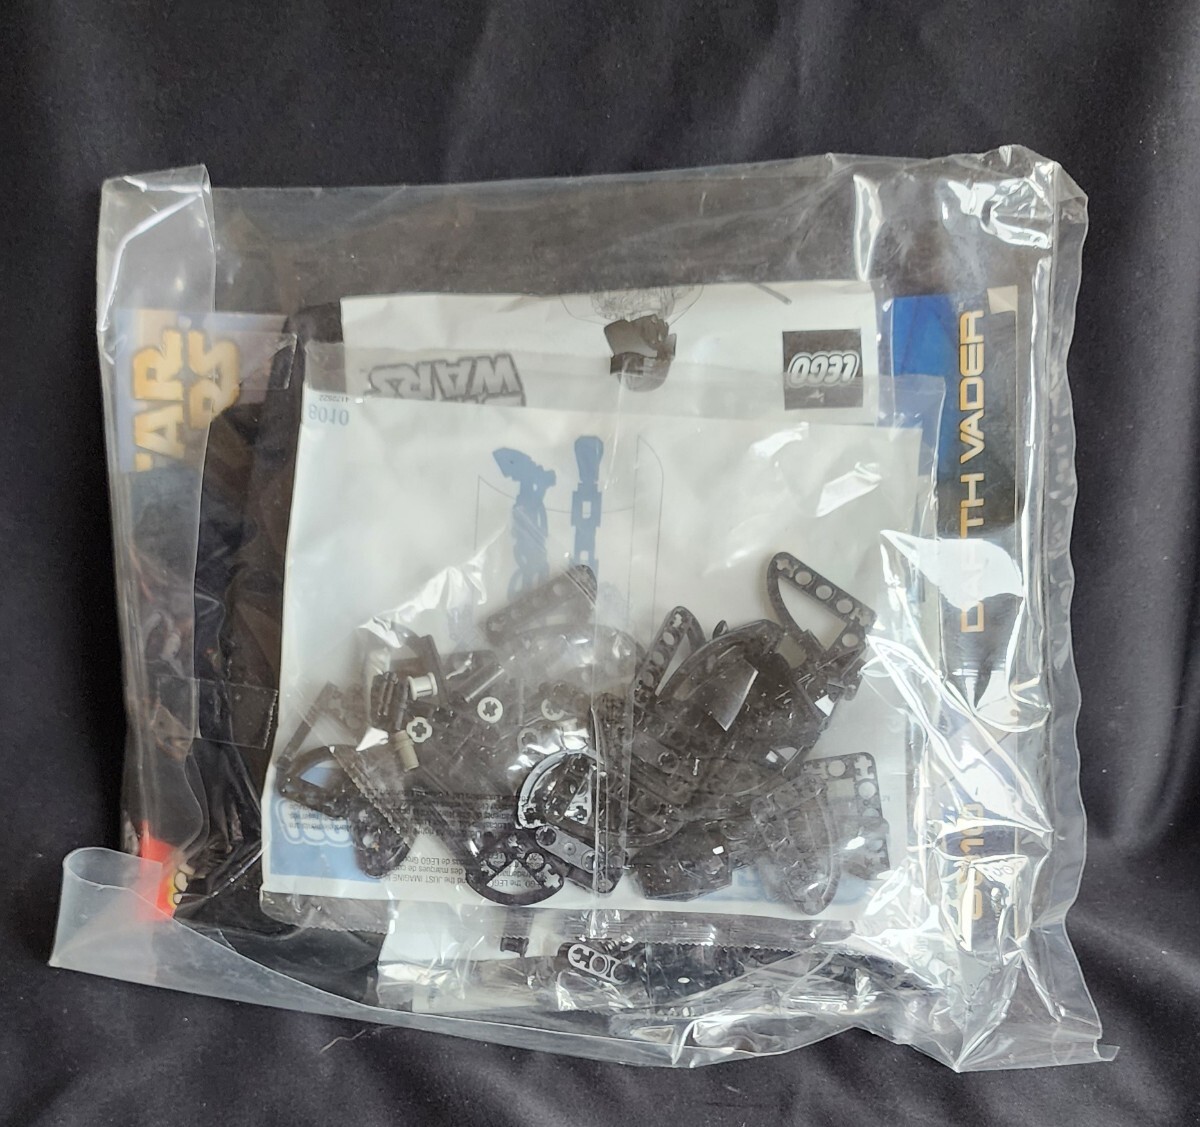  новый товар нераспечатанный LEGO Звездные войны 8010 дюжина Bay da- коробка Junk, средний пакет нераспечатанный стандартный товар maru талон 